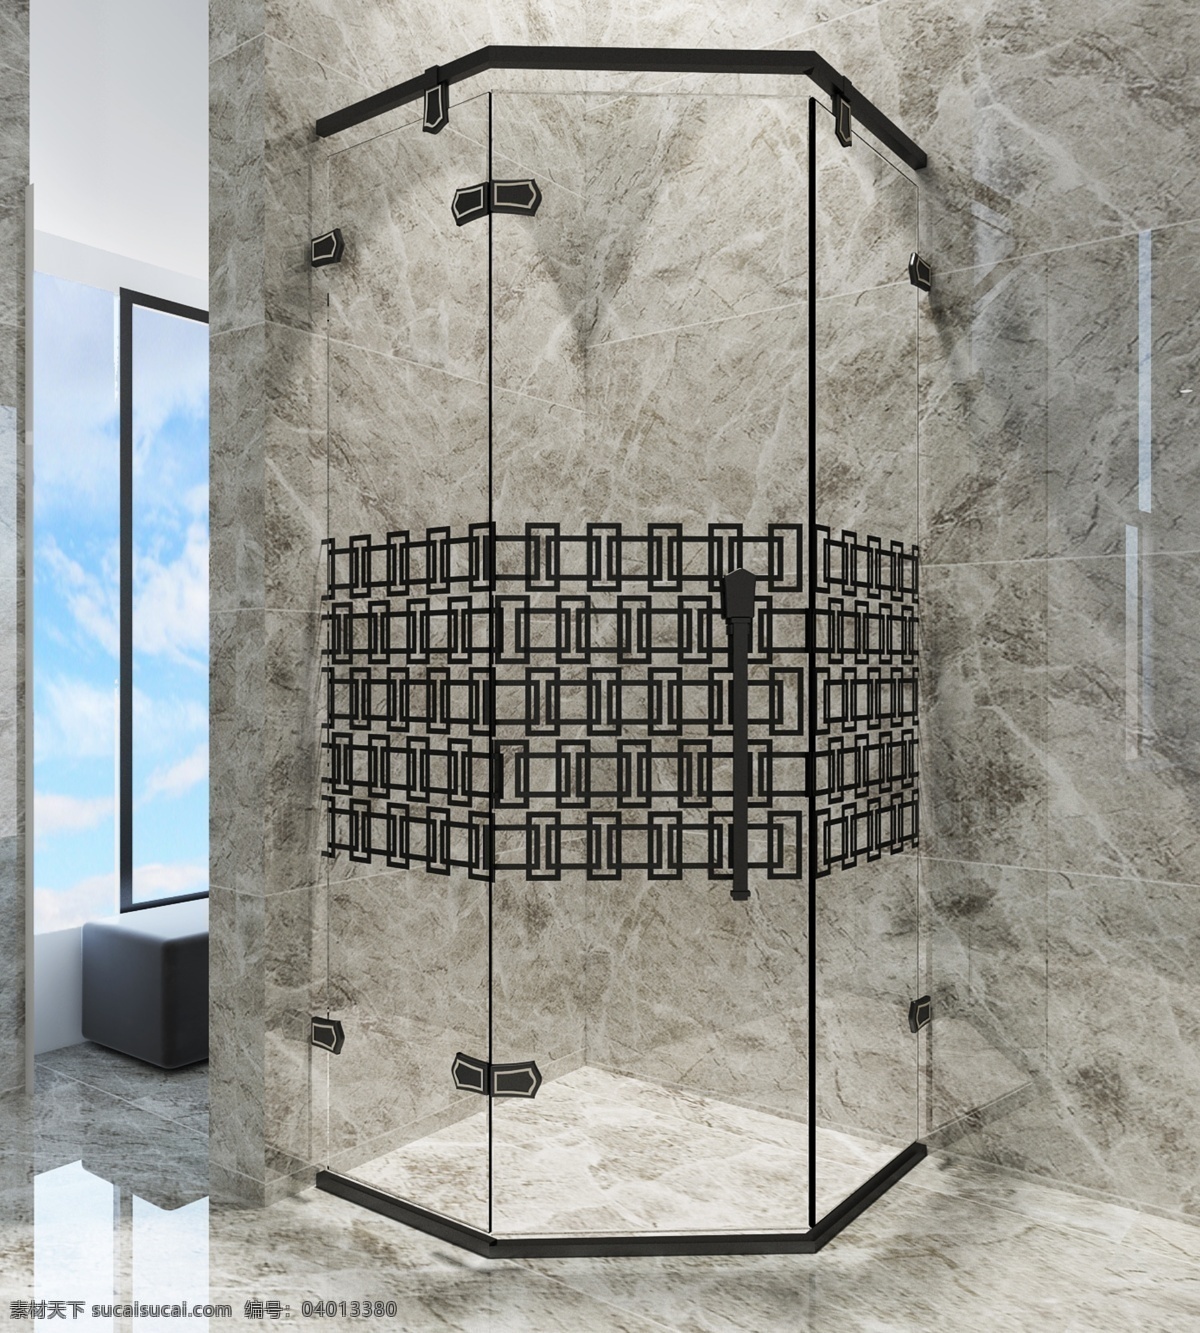 淋浴房 淋浴房效果图 淋浴产品 淋浴房间 淋浴空间 合成 平面设计 篇 3d设计 3d作品